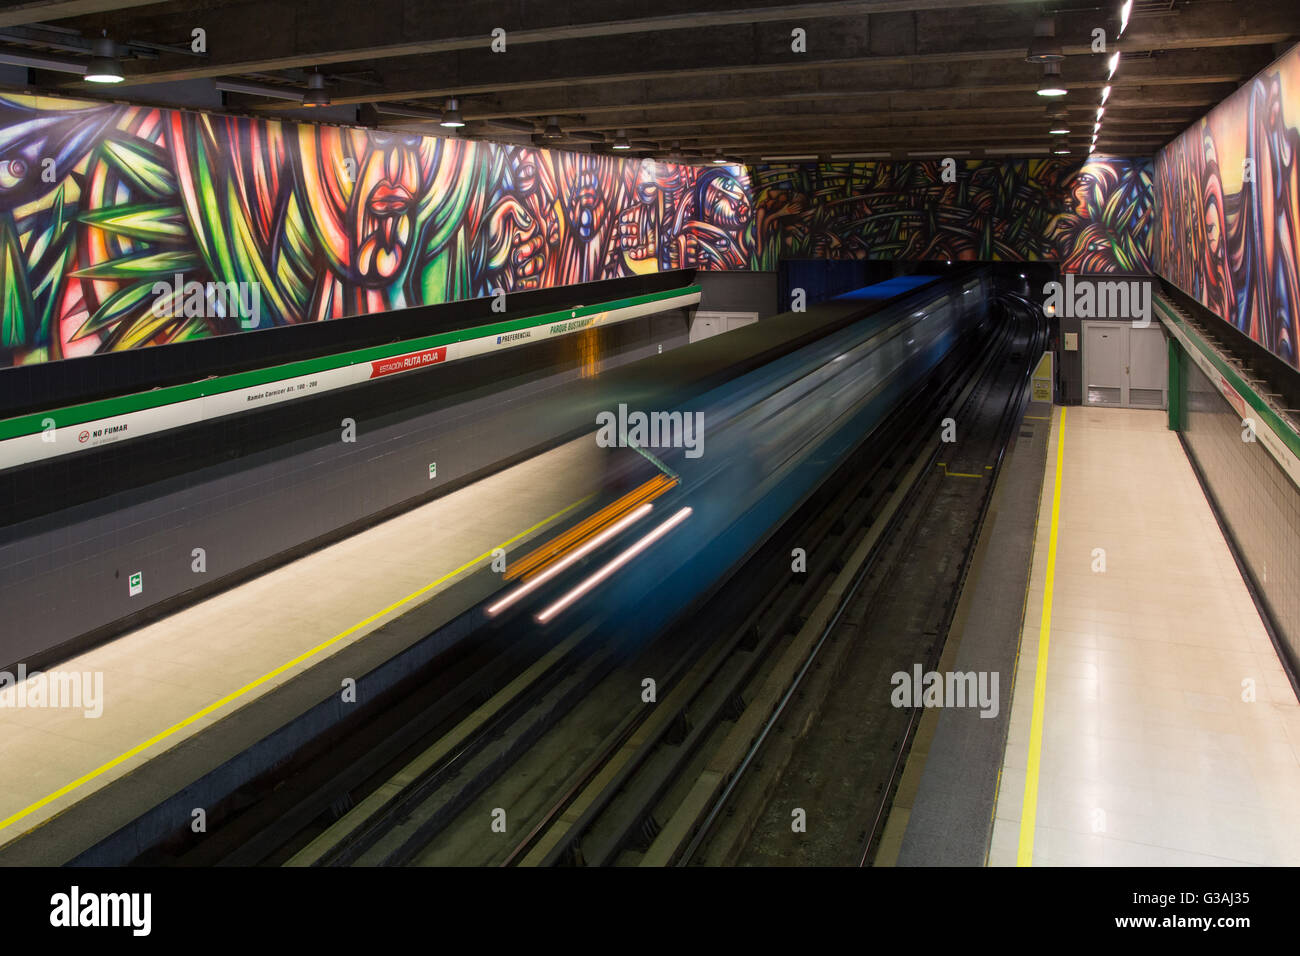 Santiago de Cile, Cile - 28 Novembre 2015: treno Arrivati alla stazione della metropolitana Parque Bustamante. Foto Stock